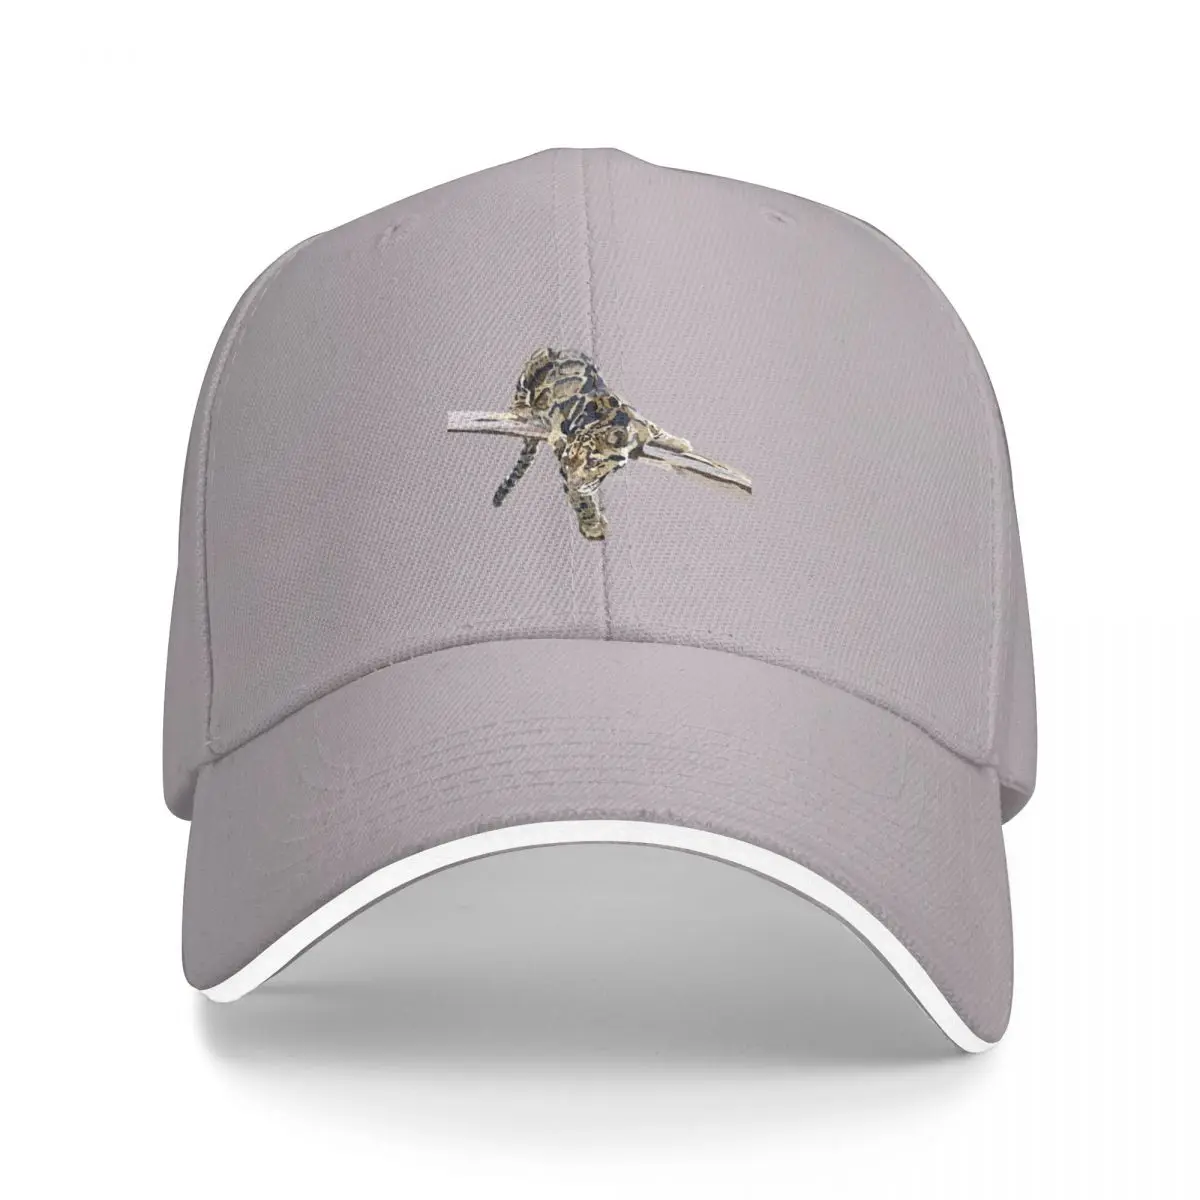 Бейсбольная кепка Faith the Clouded Leopard, одежда для гольфа, изготовленные на заказ шляпы, кепки для гольфа, мужские кепки, женские